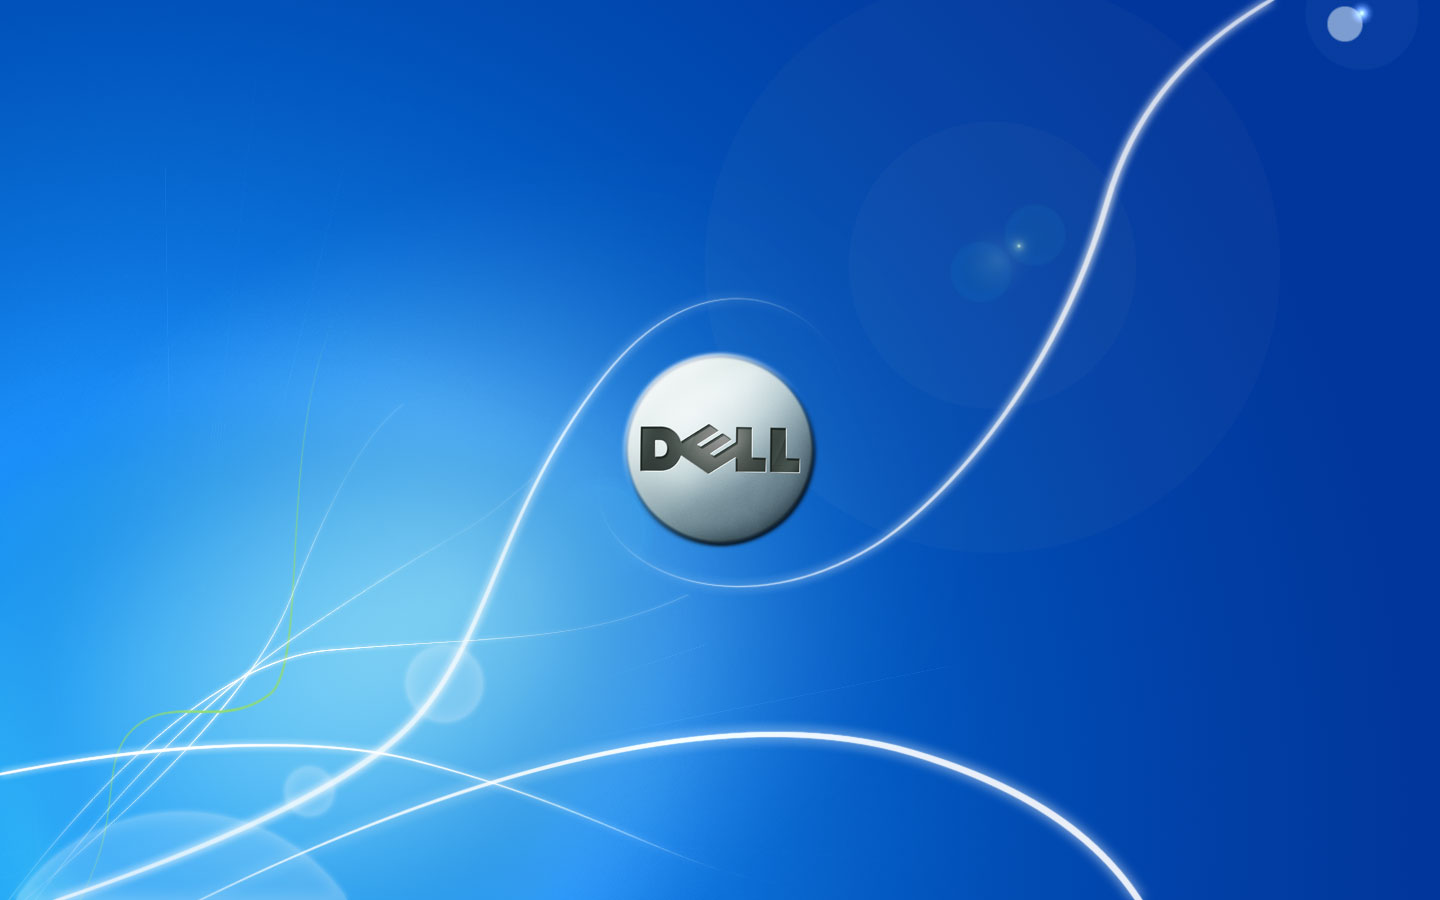 Hình nền Dell Latitude đang đợi bạn để biến máy tính của mình thành một tác phẩm nghệ thuật độc đáo. Với màu đen thanh lịch, thiết kế đơn giản nhưng hiện đại, hình ảnh này sẽ giúp bạn nổi bật và thu hút sự chú ý của mọi người. Khám phá ngay bức ảnh dành cho máy tính xách tay Dell Latitude này để trở thành người sở hữu sự khác biệt.